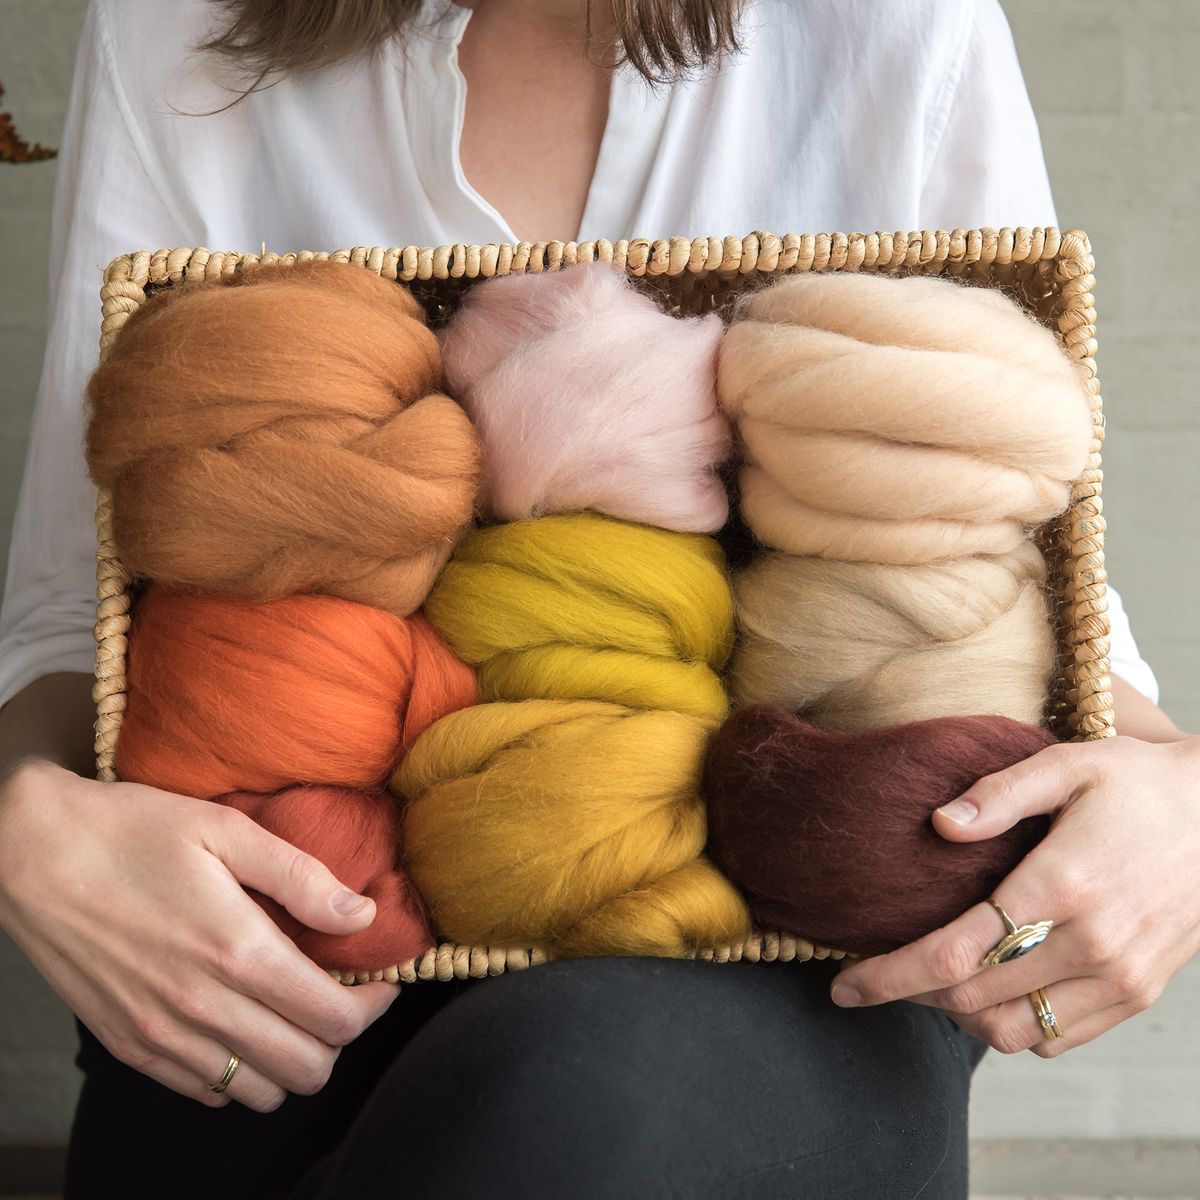 Organic Merino Wool Roving - Beige